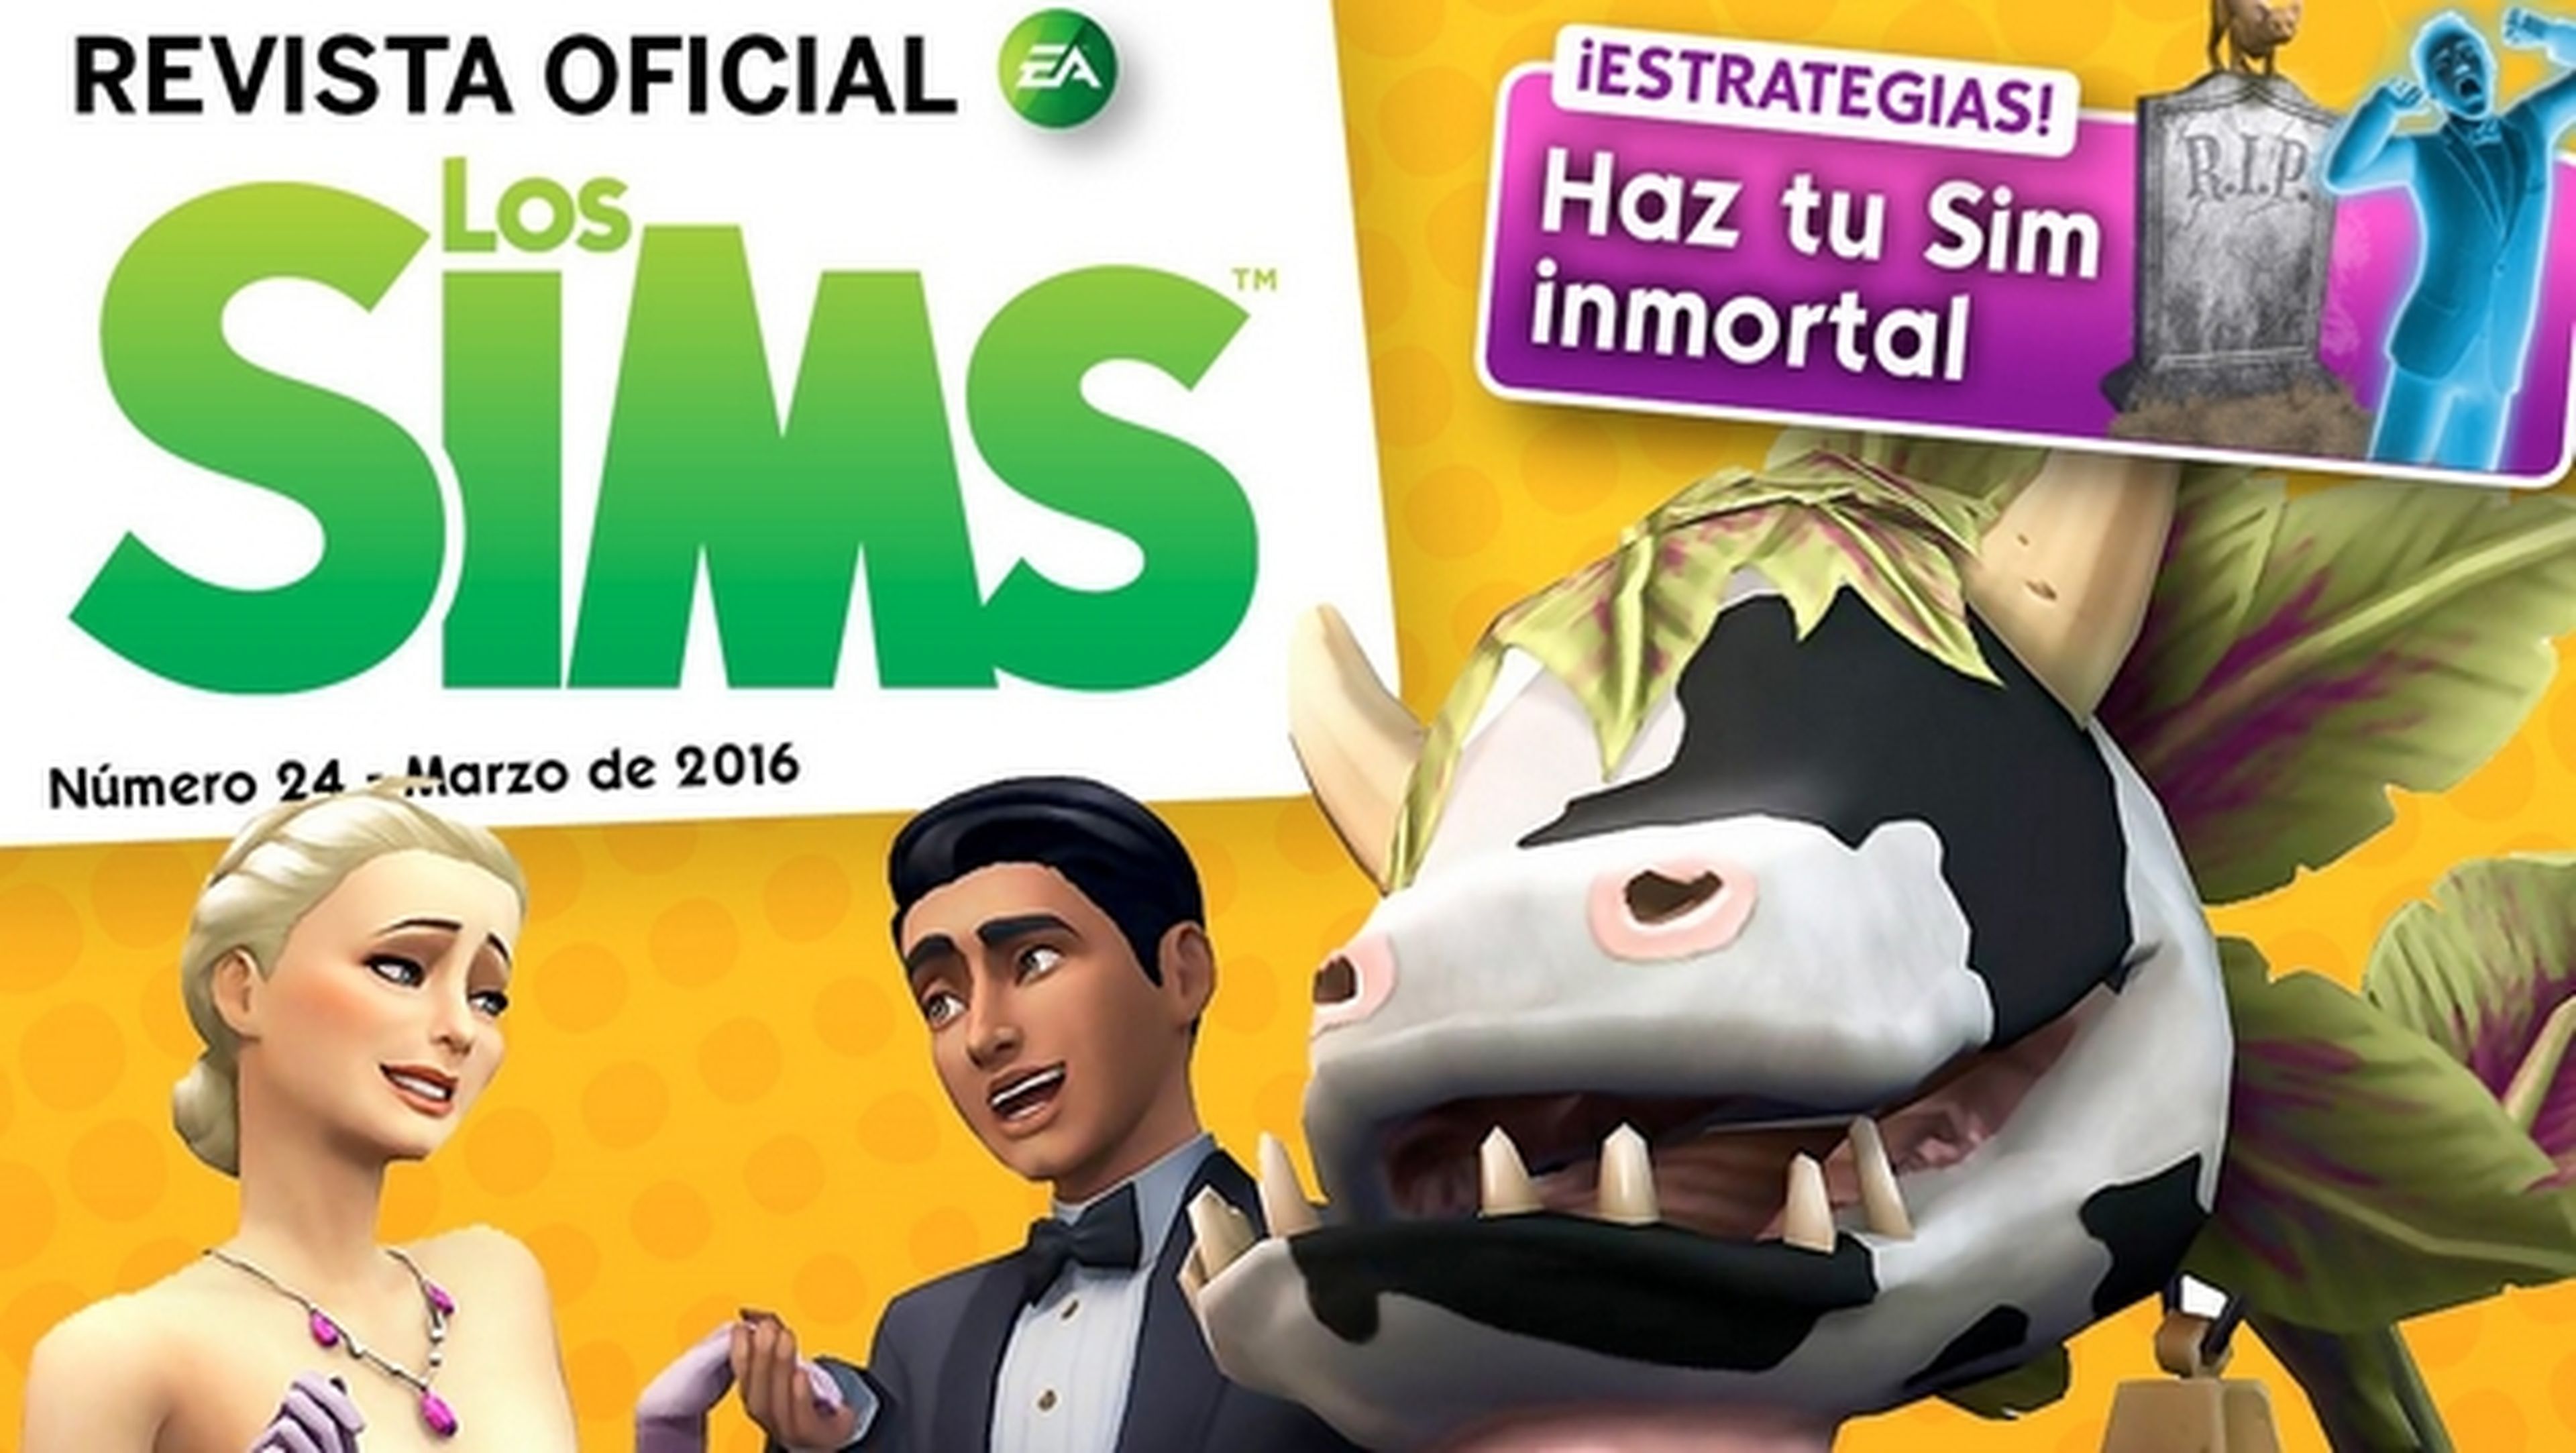 Revista Oficial de los Sims 24 para iOS y Android, descárgala gratis